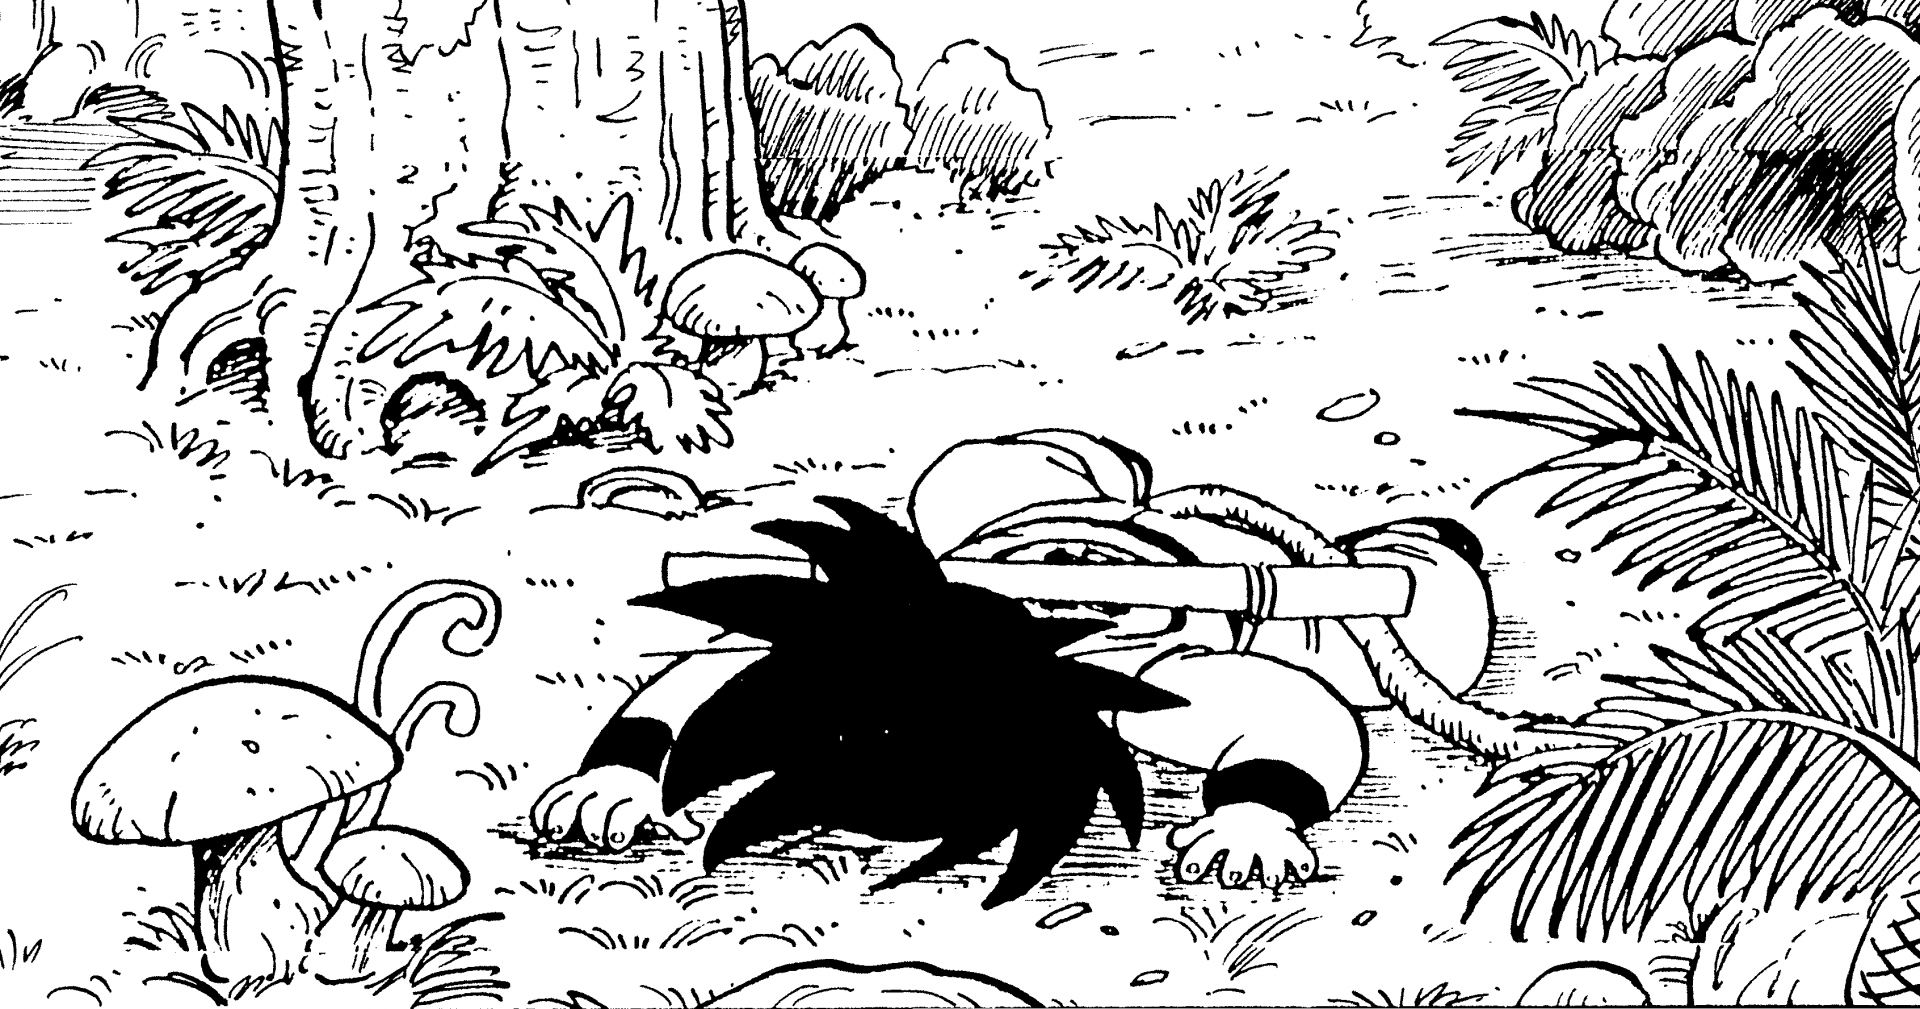 〜 Investigación en profundidad sobre el manga de Dragon Ball: Archivo # 015〜 Diario de viaje mundial: Sitio del primer encuentro de Goku con Yajirobe